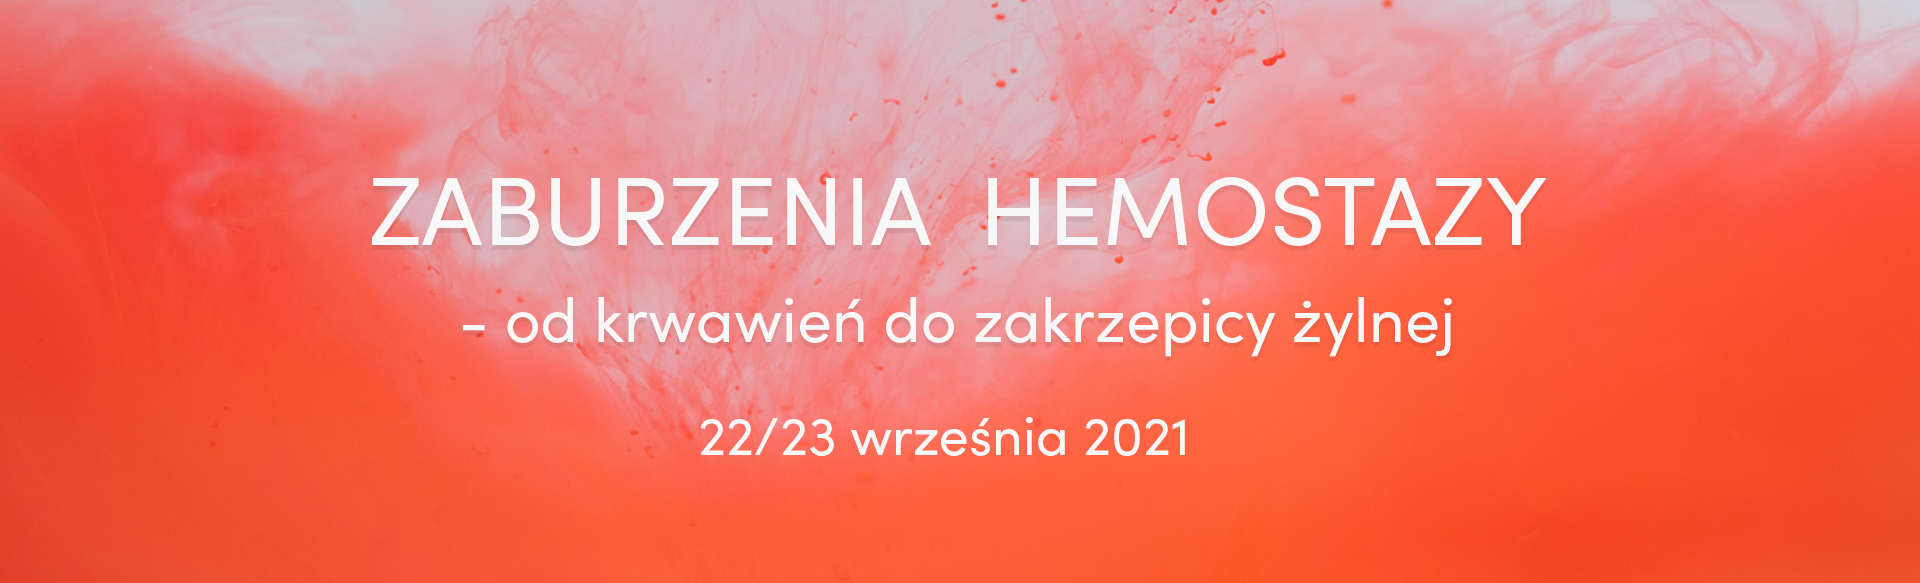 Zaburzenia hemostazy - od krwawień do zakrzepicy żylnej 2021